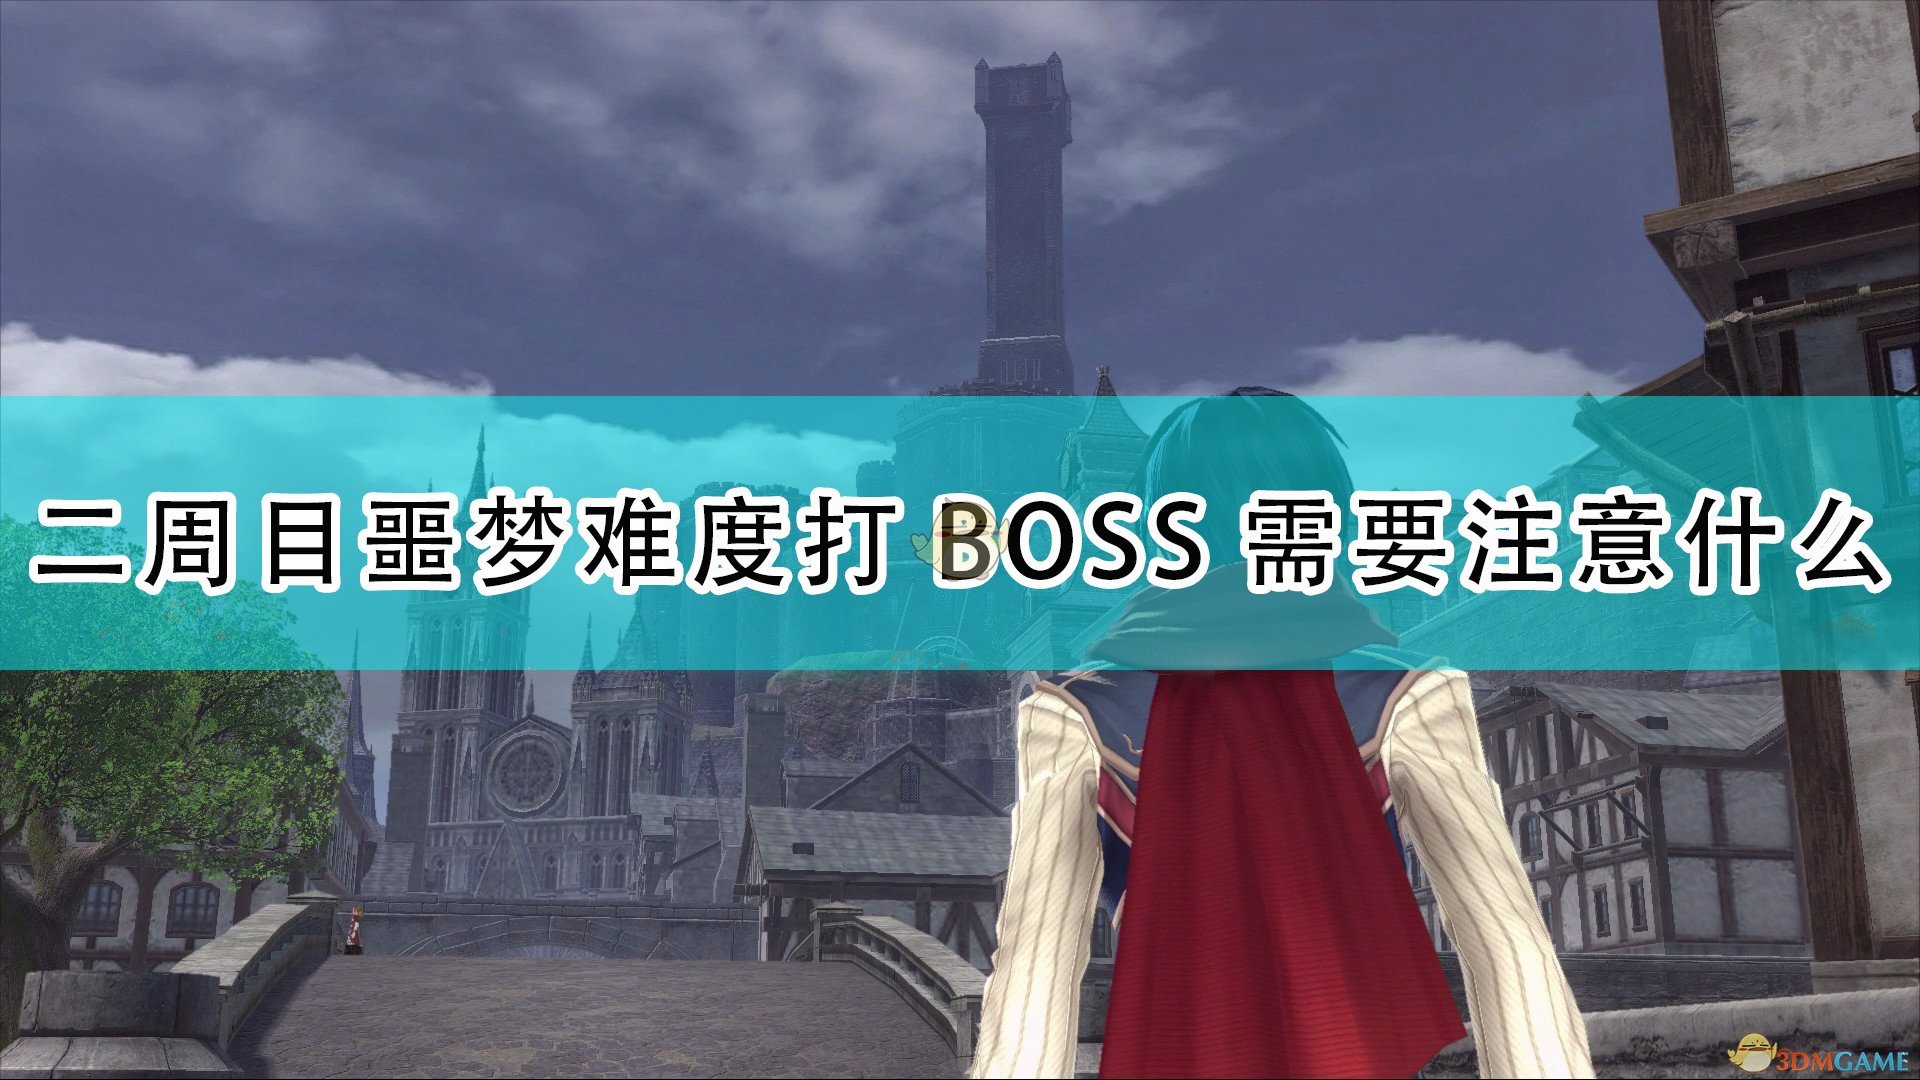 伊苏9隐藏boss怎么打 触发隐藏boss条件及打法